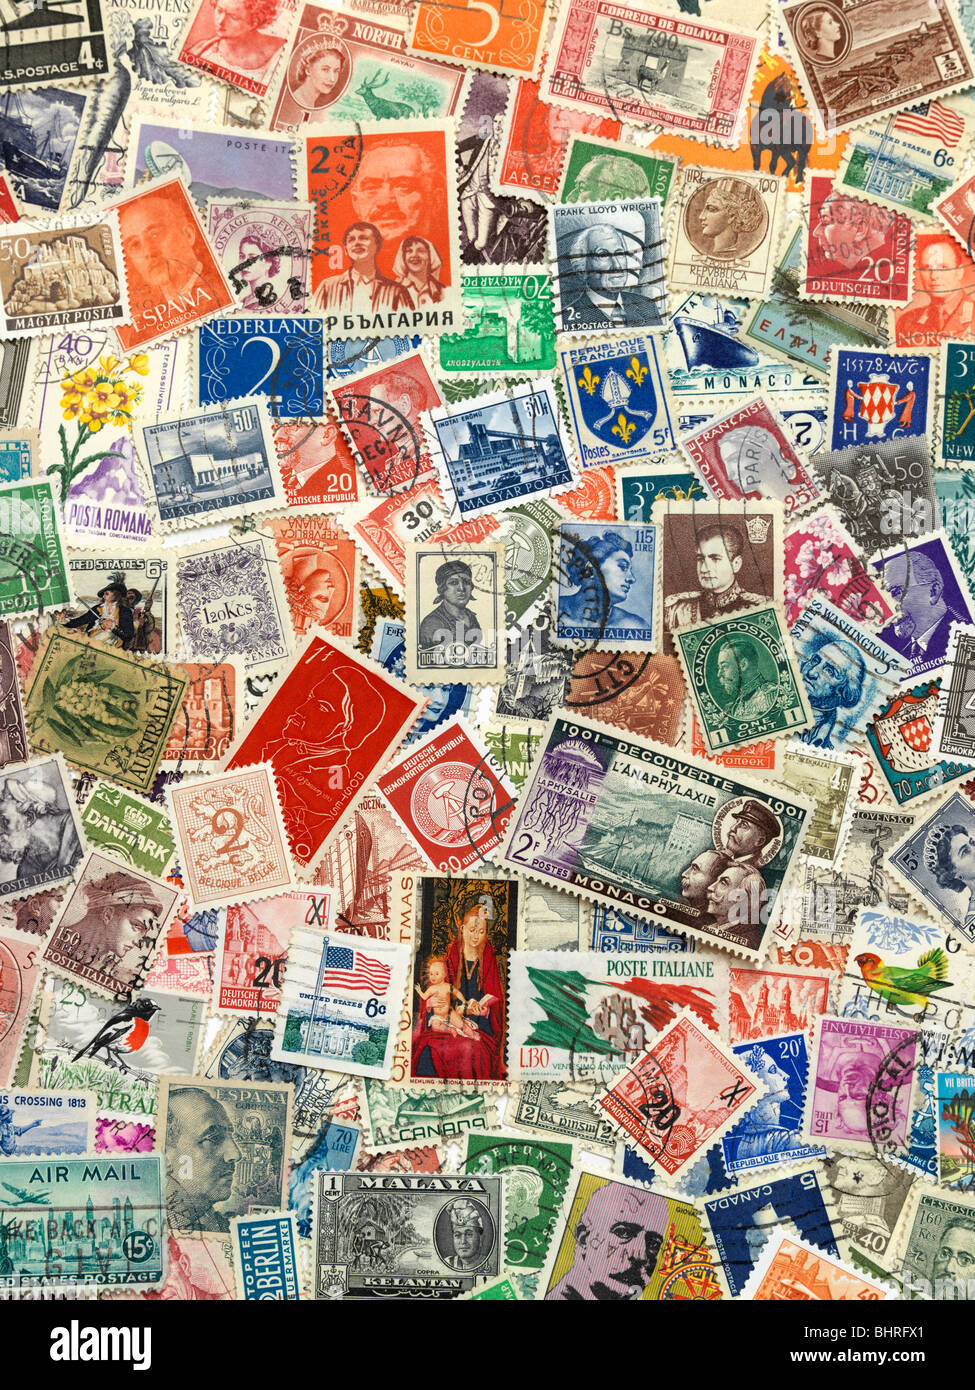 Internationale Briefmarken der Welt, Stillleben Sammlung, Briefmarken füllen den gesamten Rahmen des Bildes. Stockfoto